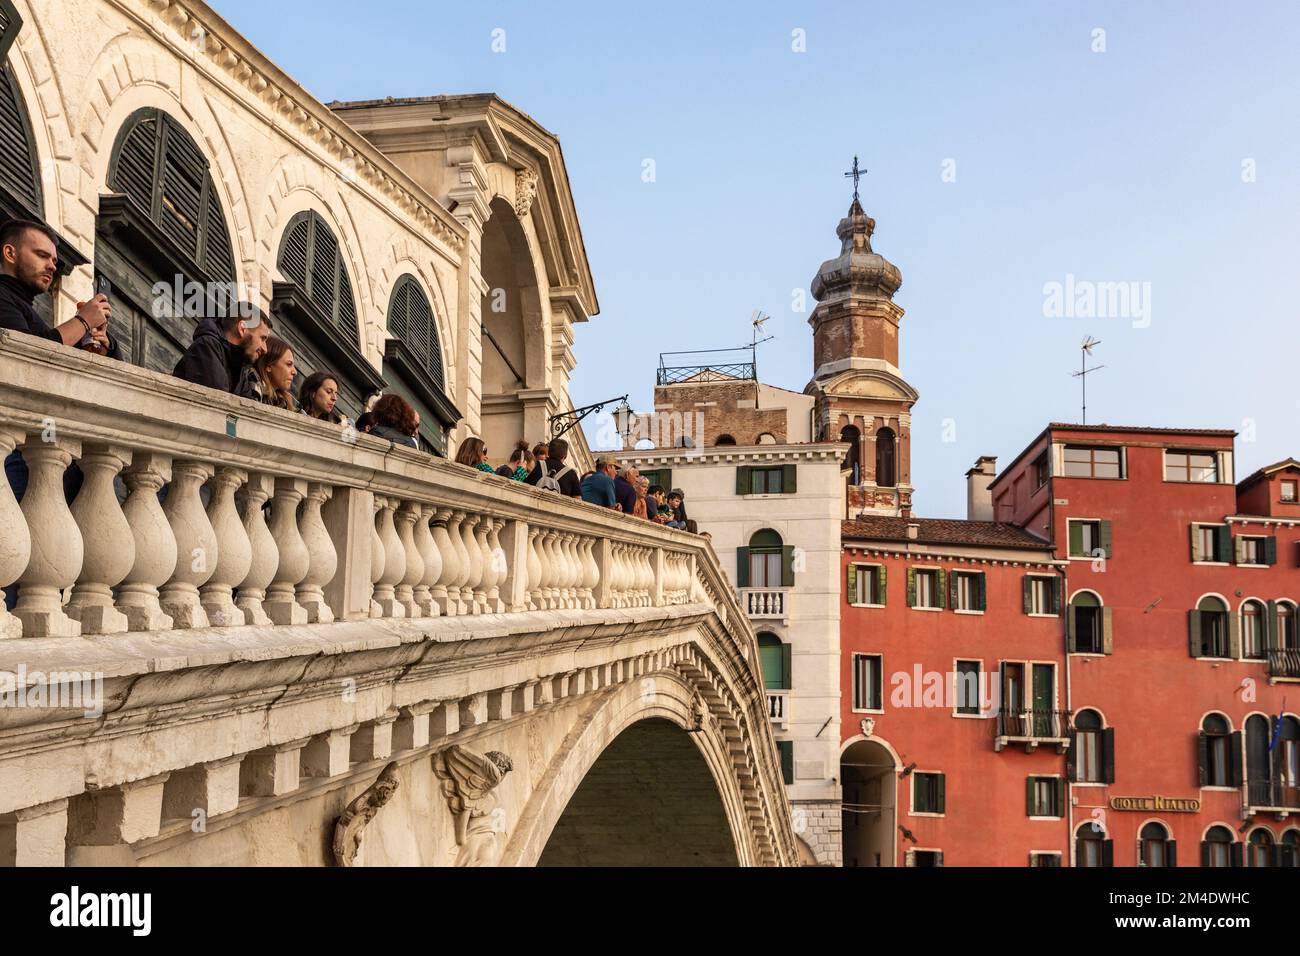 La vista sul Ponte di Rialto sul Canal Grande a Venezia. I turisti soggiornano sul Ponte di Rialto e guardano le gondole e le barche sul Canal Grande. Foto Stock